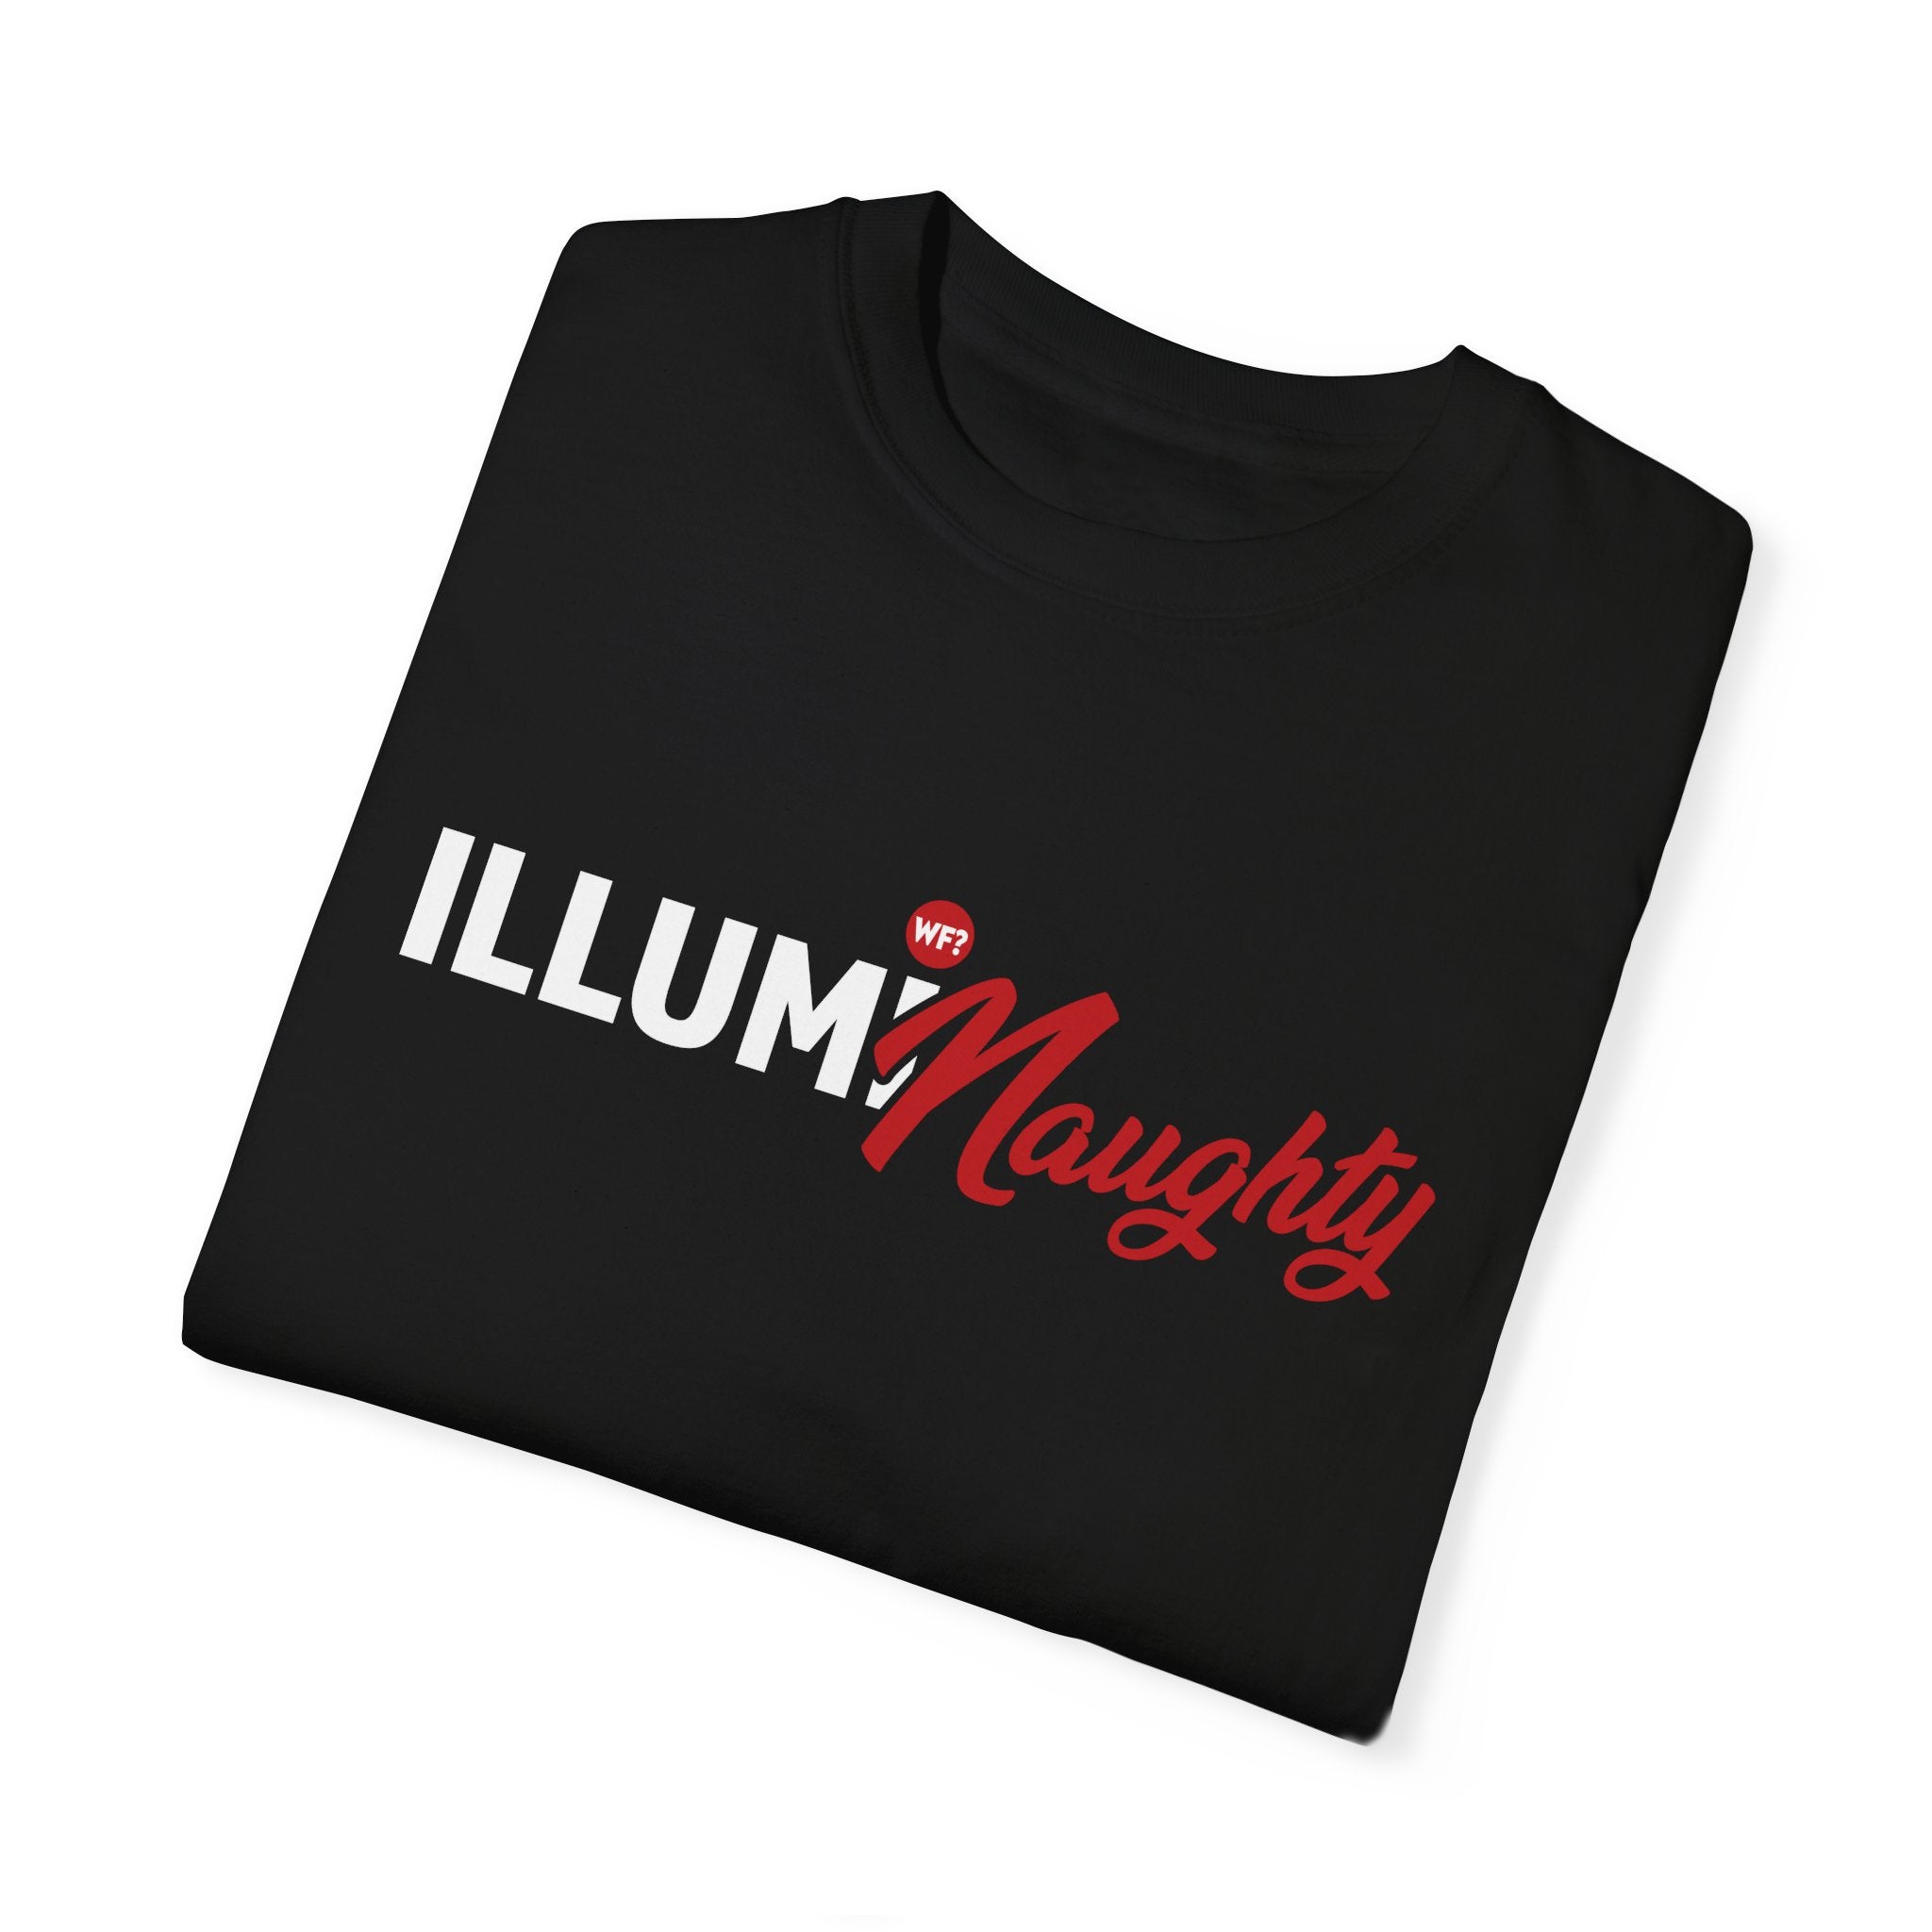 IllumiNaughty Unisex T-shirt